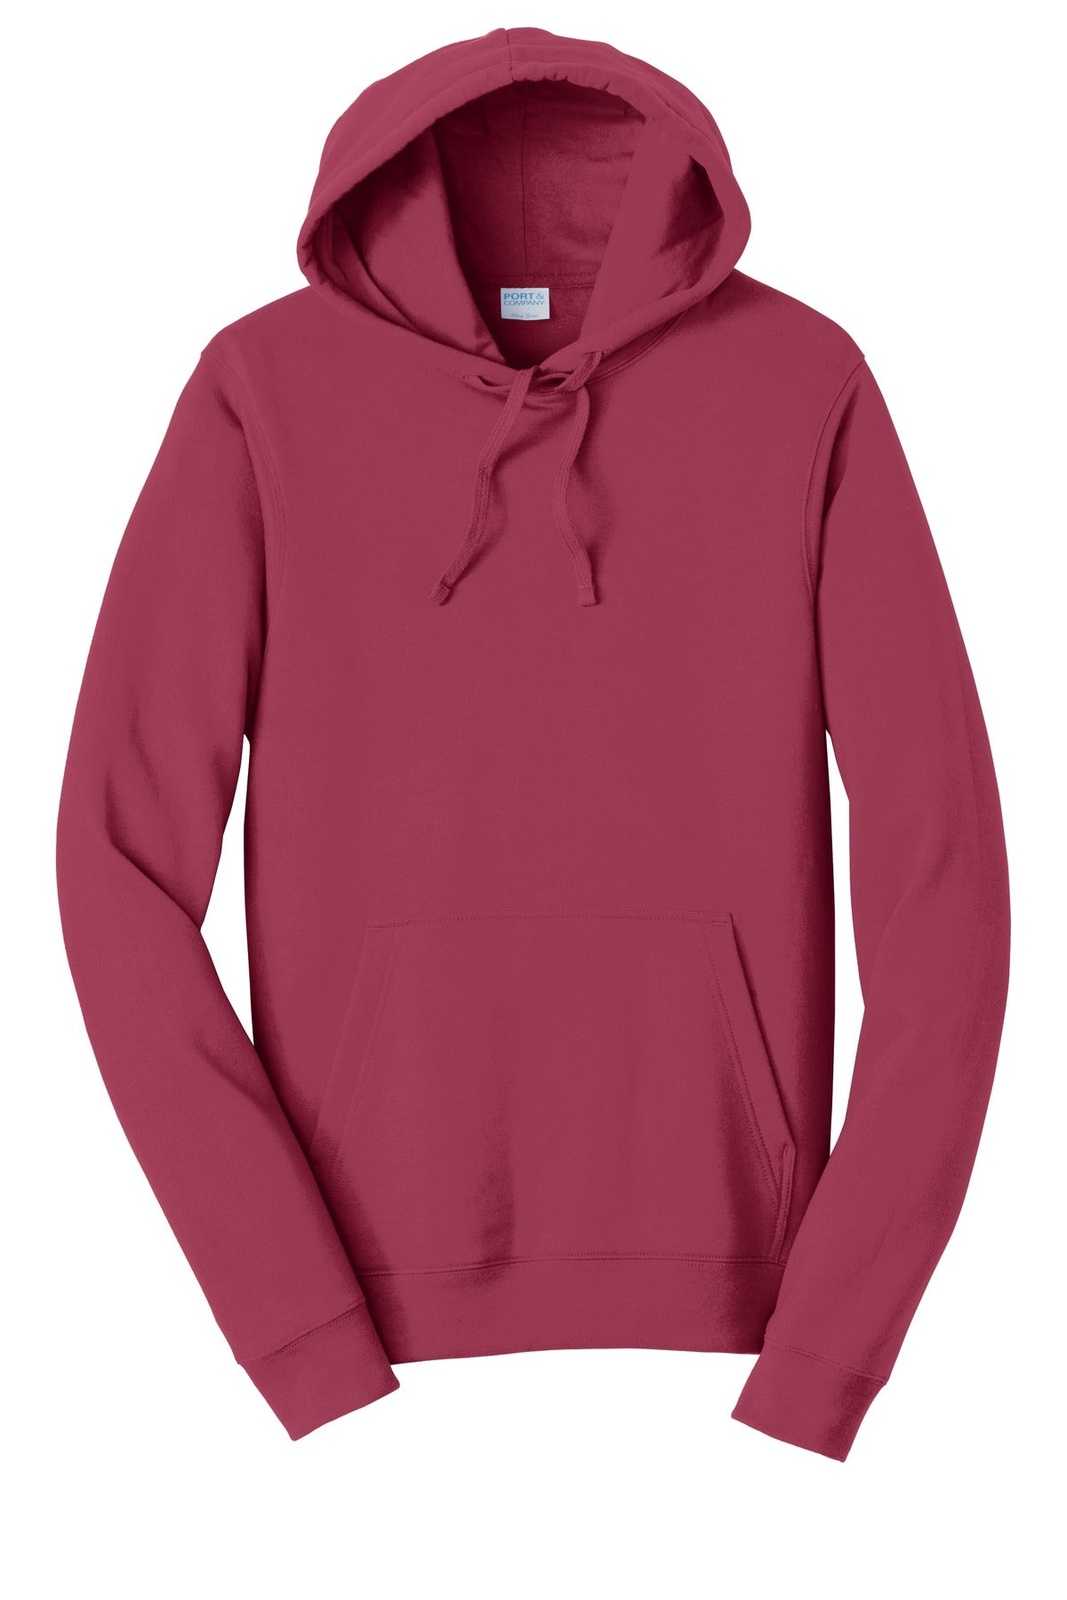 Port &amp; Company PC850H Fan Favorite Fleece Pullover Hooded Sweatshirt - Garnet - HIT a Double - 5